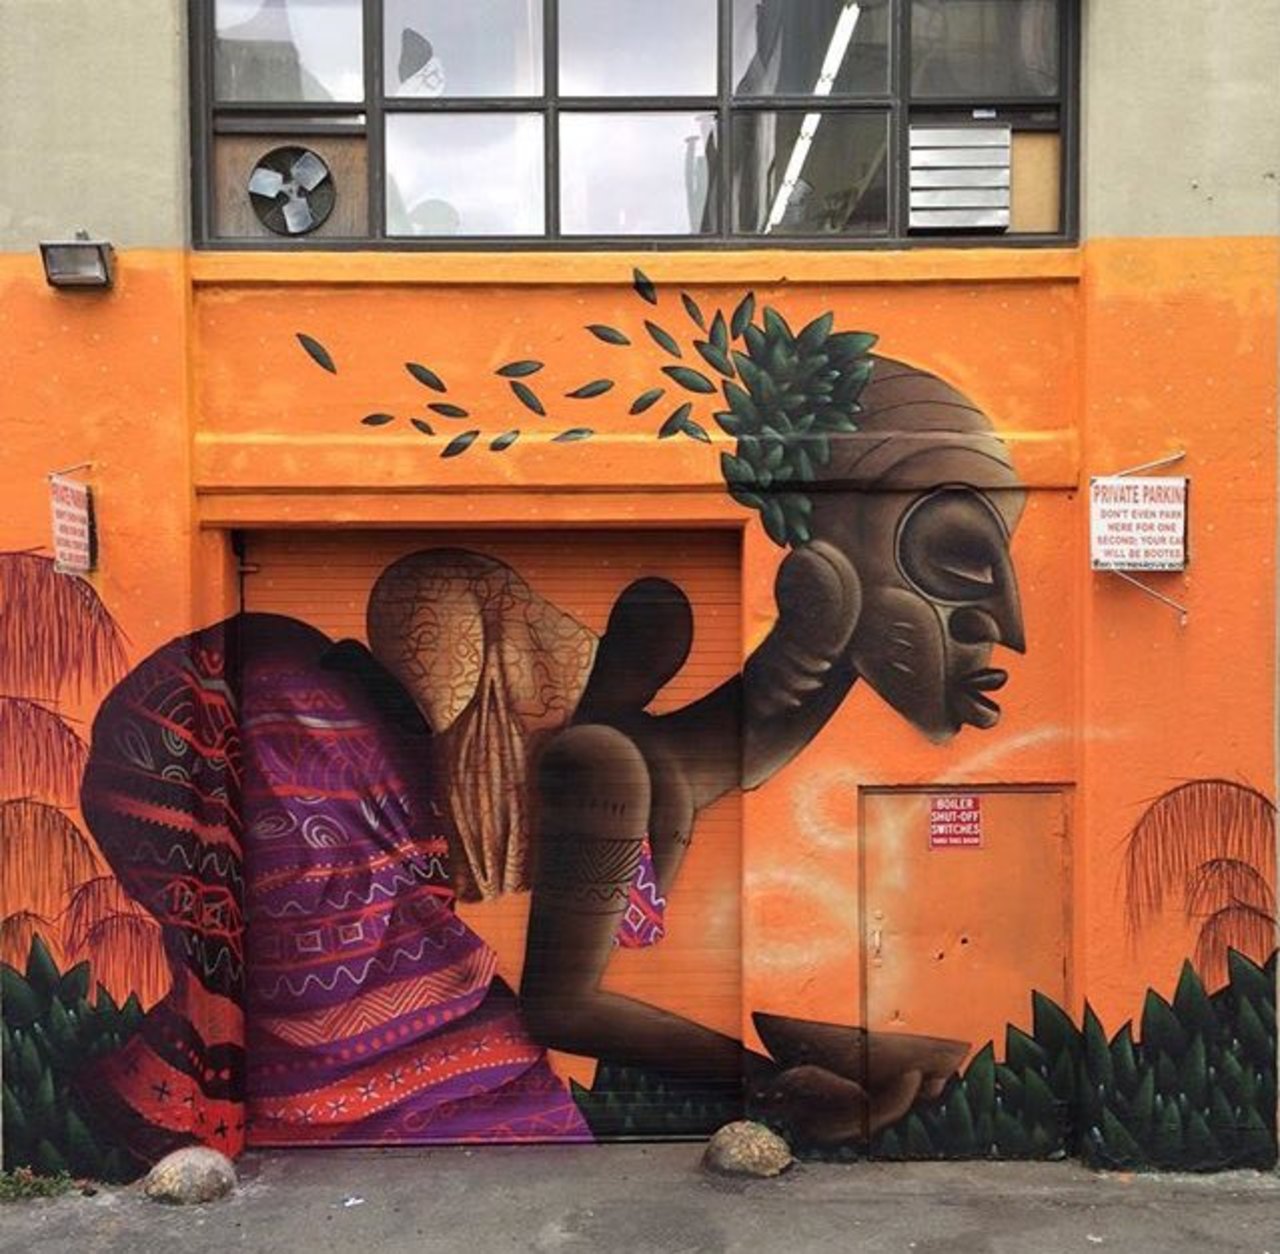 RT @belilac: RT belilac "New Street Art by Alexandre Keto in NYC 

#art #graffiti #mural #streetart https://t.co/5GlAopJczl"